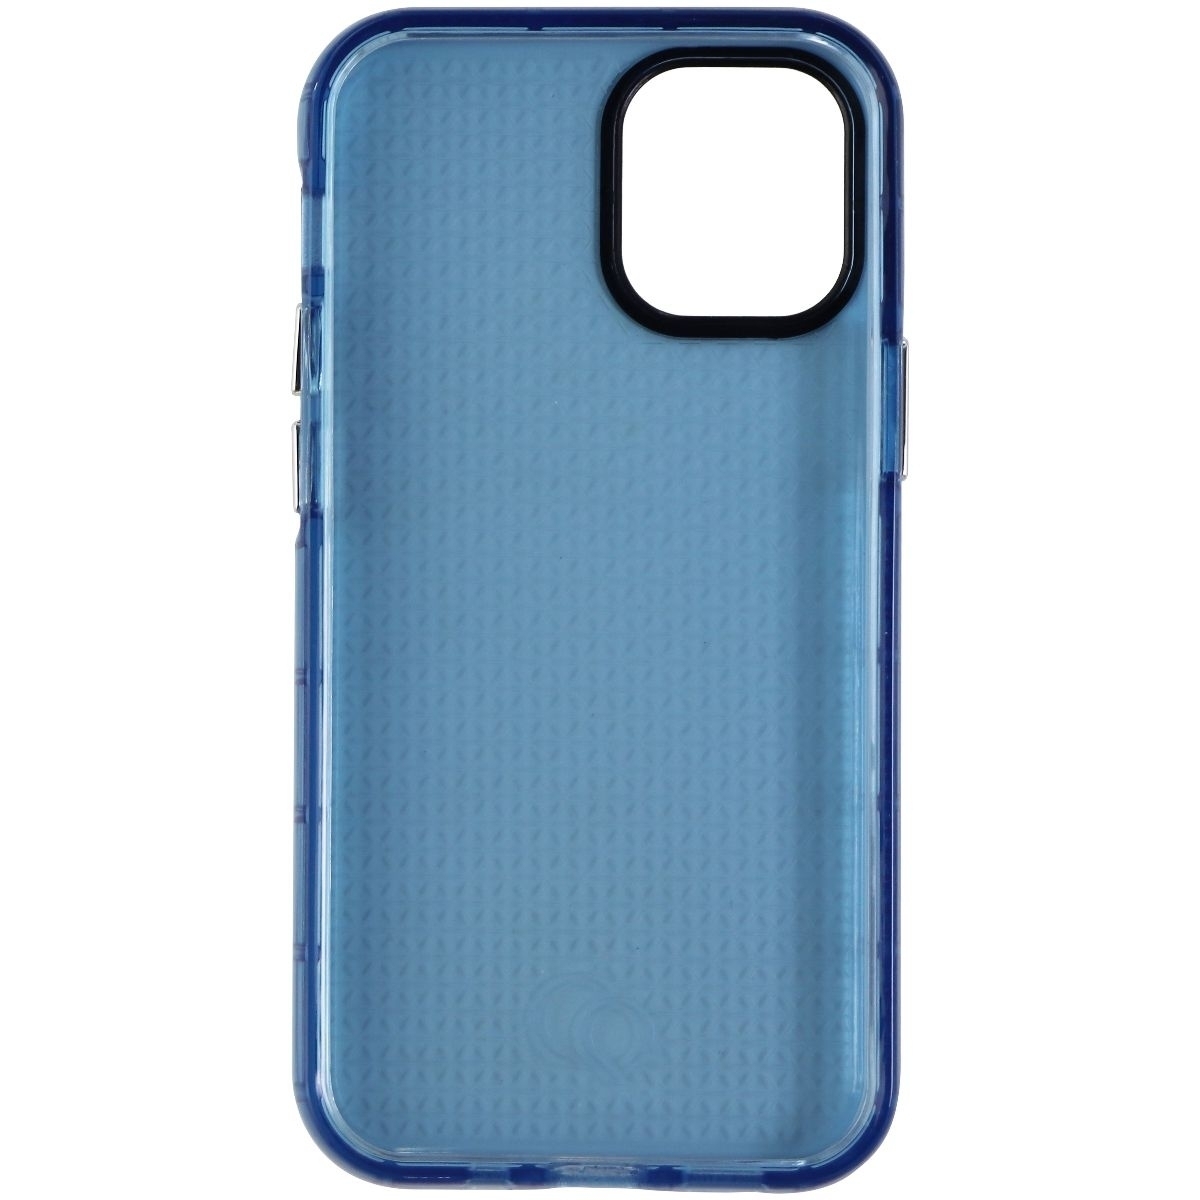 Nimbus9 Phantom 2 Series Case For Apple IPhone 12 Mini - Pacific Blue